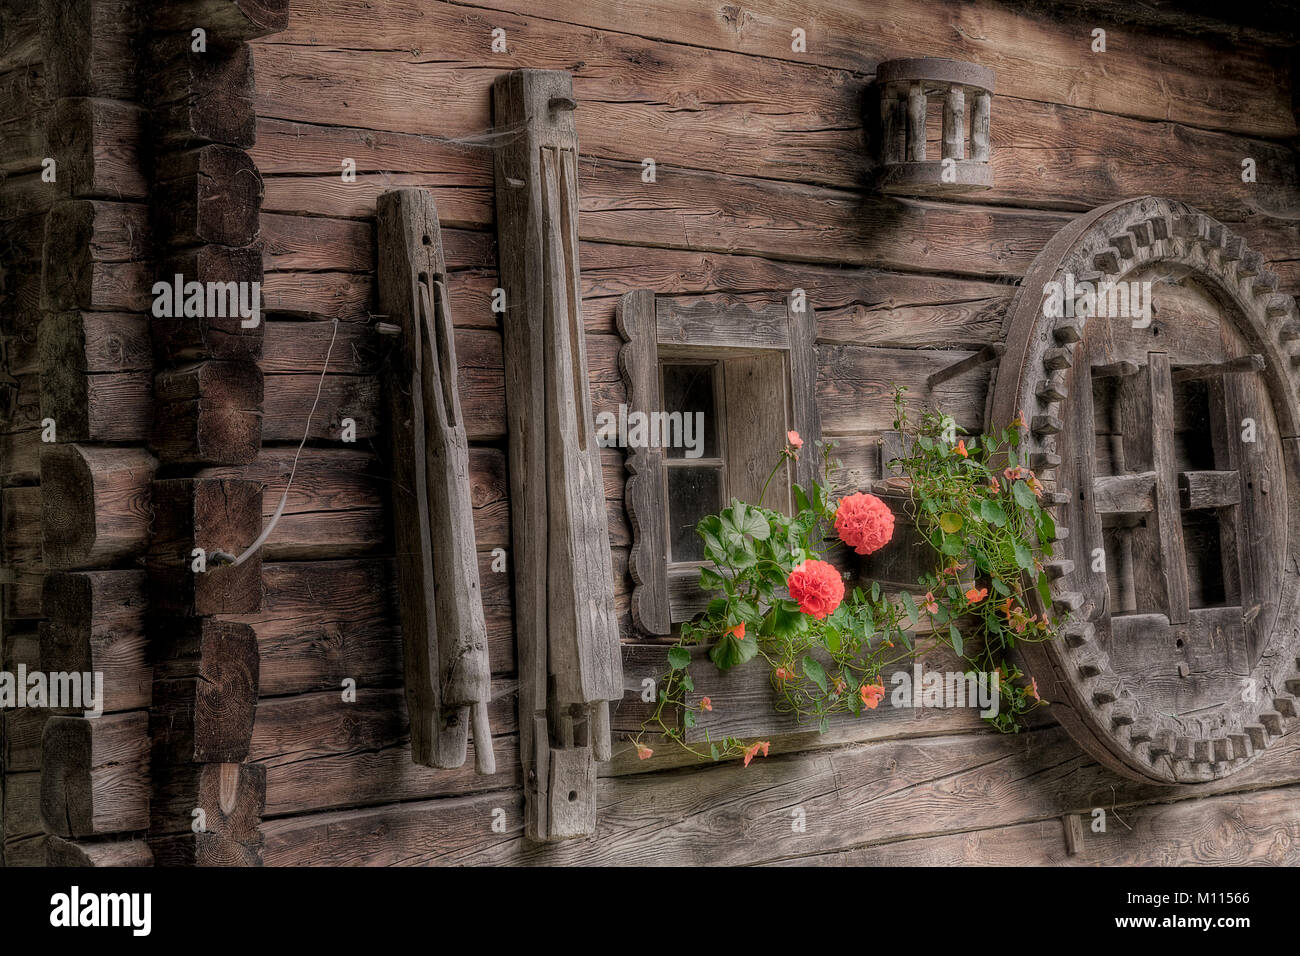 Pareti in legno della vecchia baita alpina con strumenti pensili e fiori Foto Stock